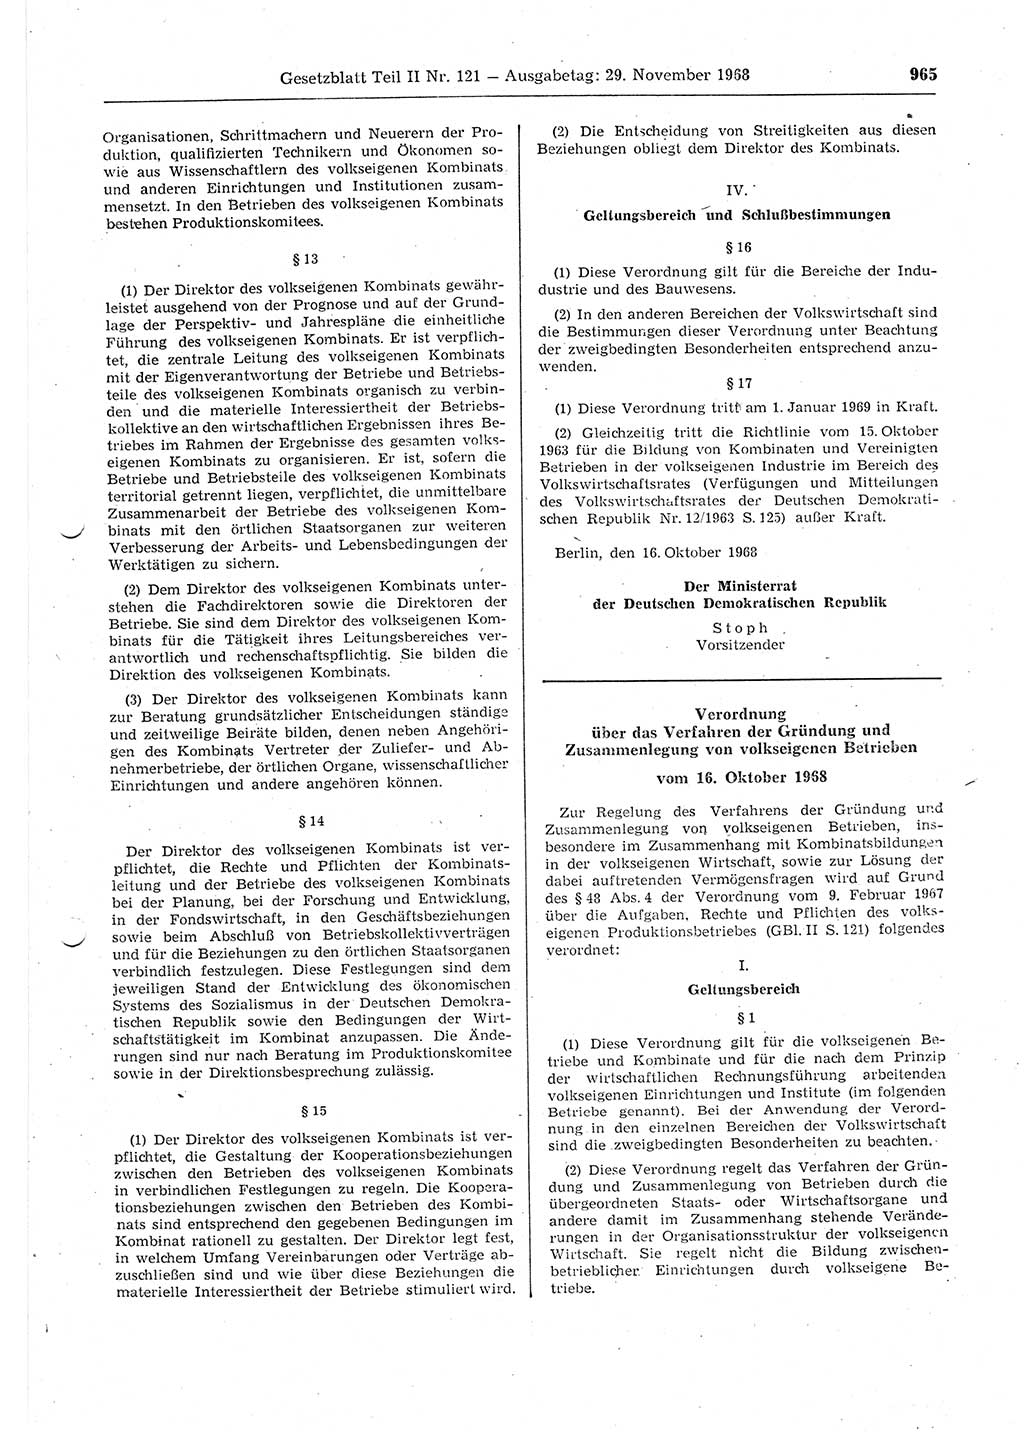 Gesetzblatt (GBl.) der Deutschen Demokratischen Republik (DDR) Teil ⅠⅠ 1968, Seite 965 (GBl. DDR ⅠⅠ 1968, S. 965)